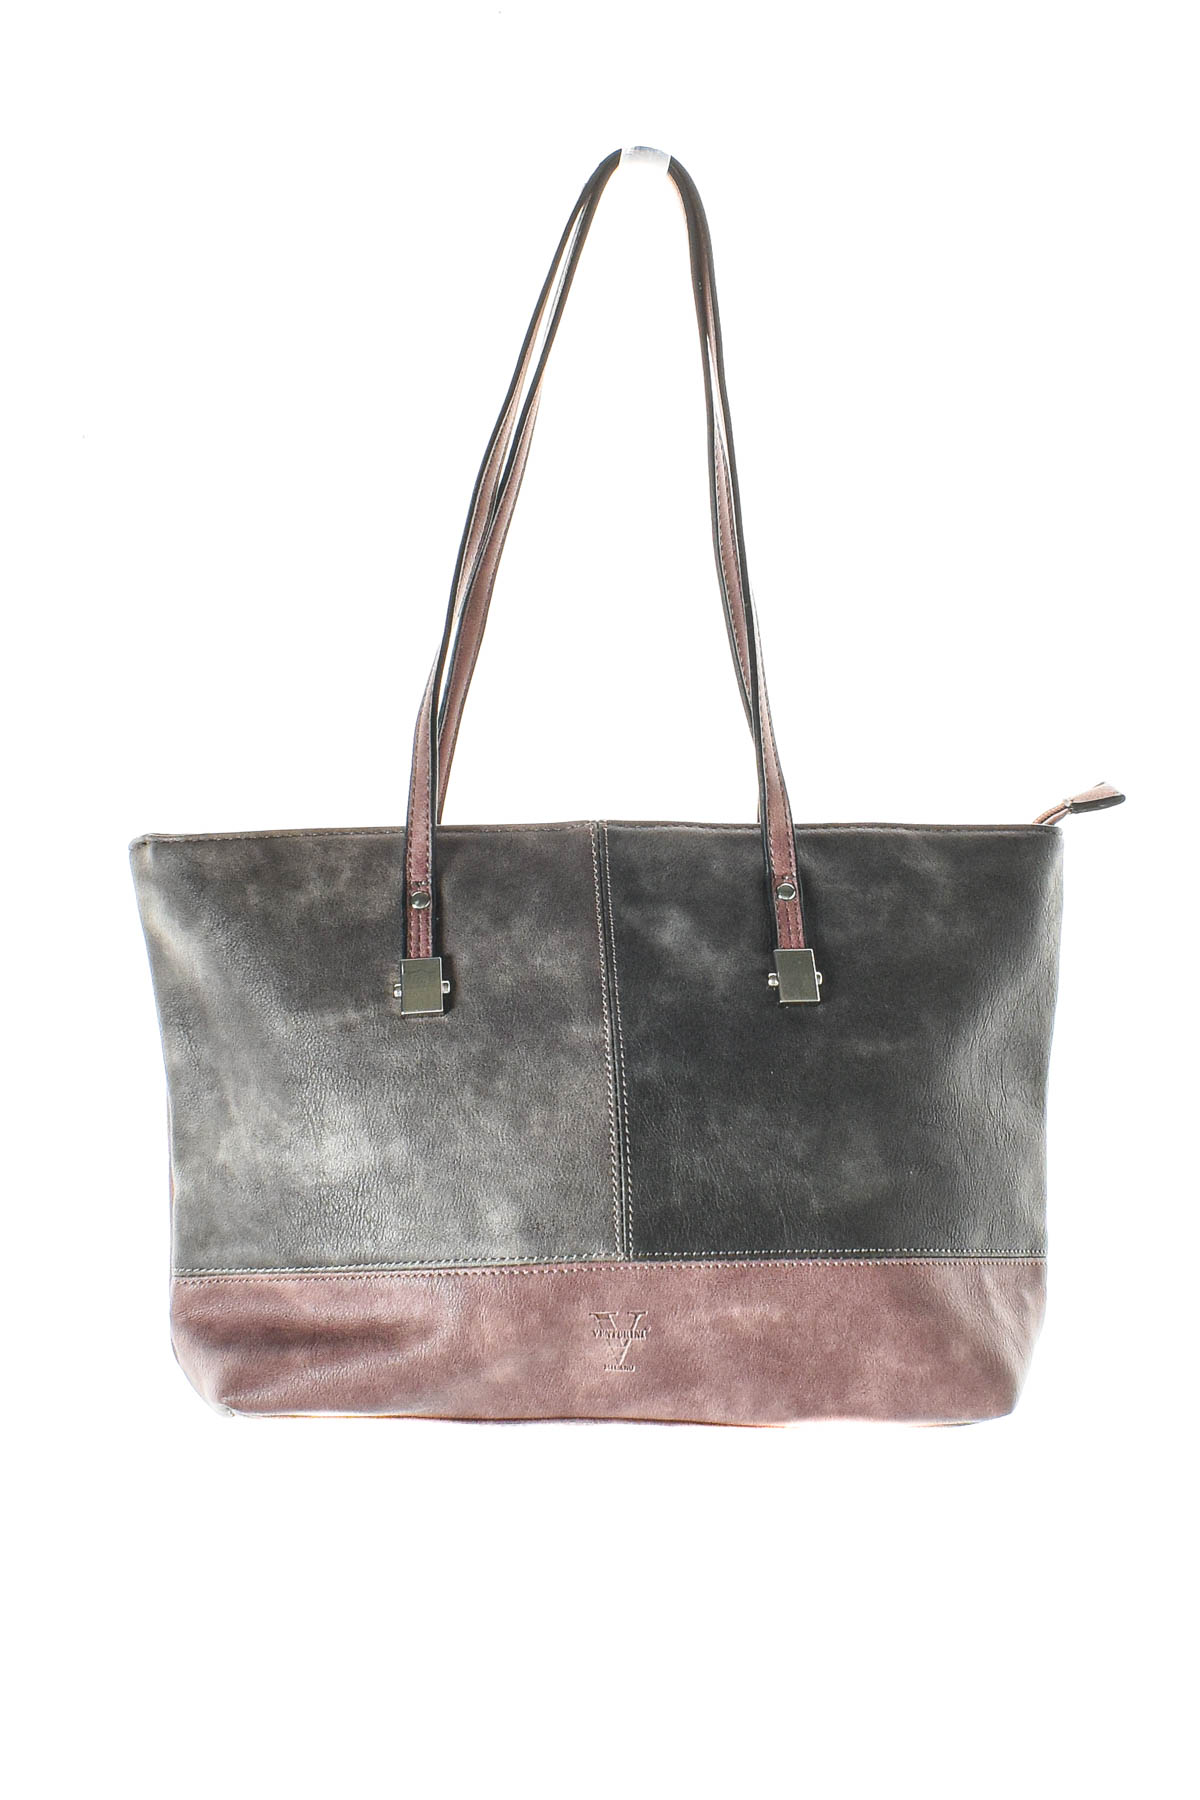 Women's bag - Venturini - 0